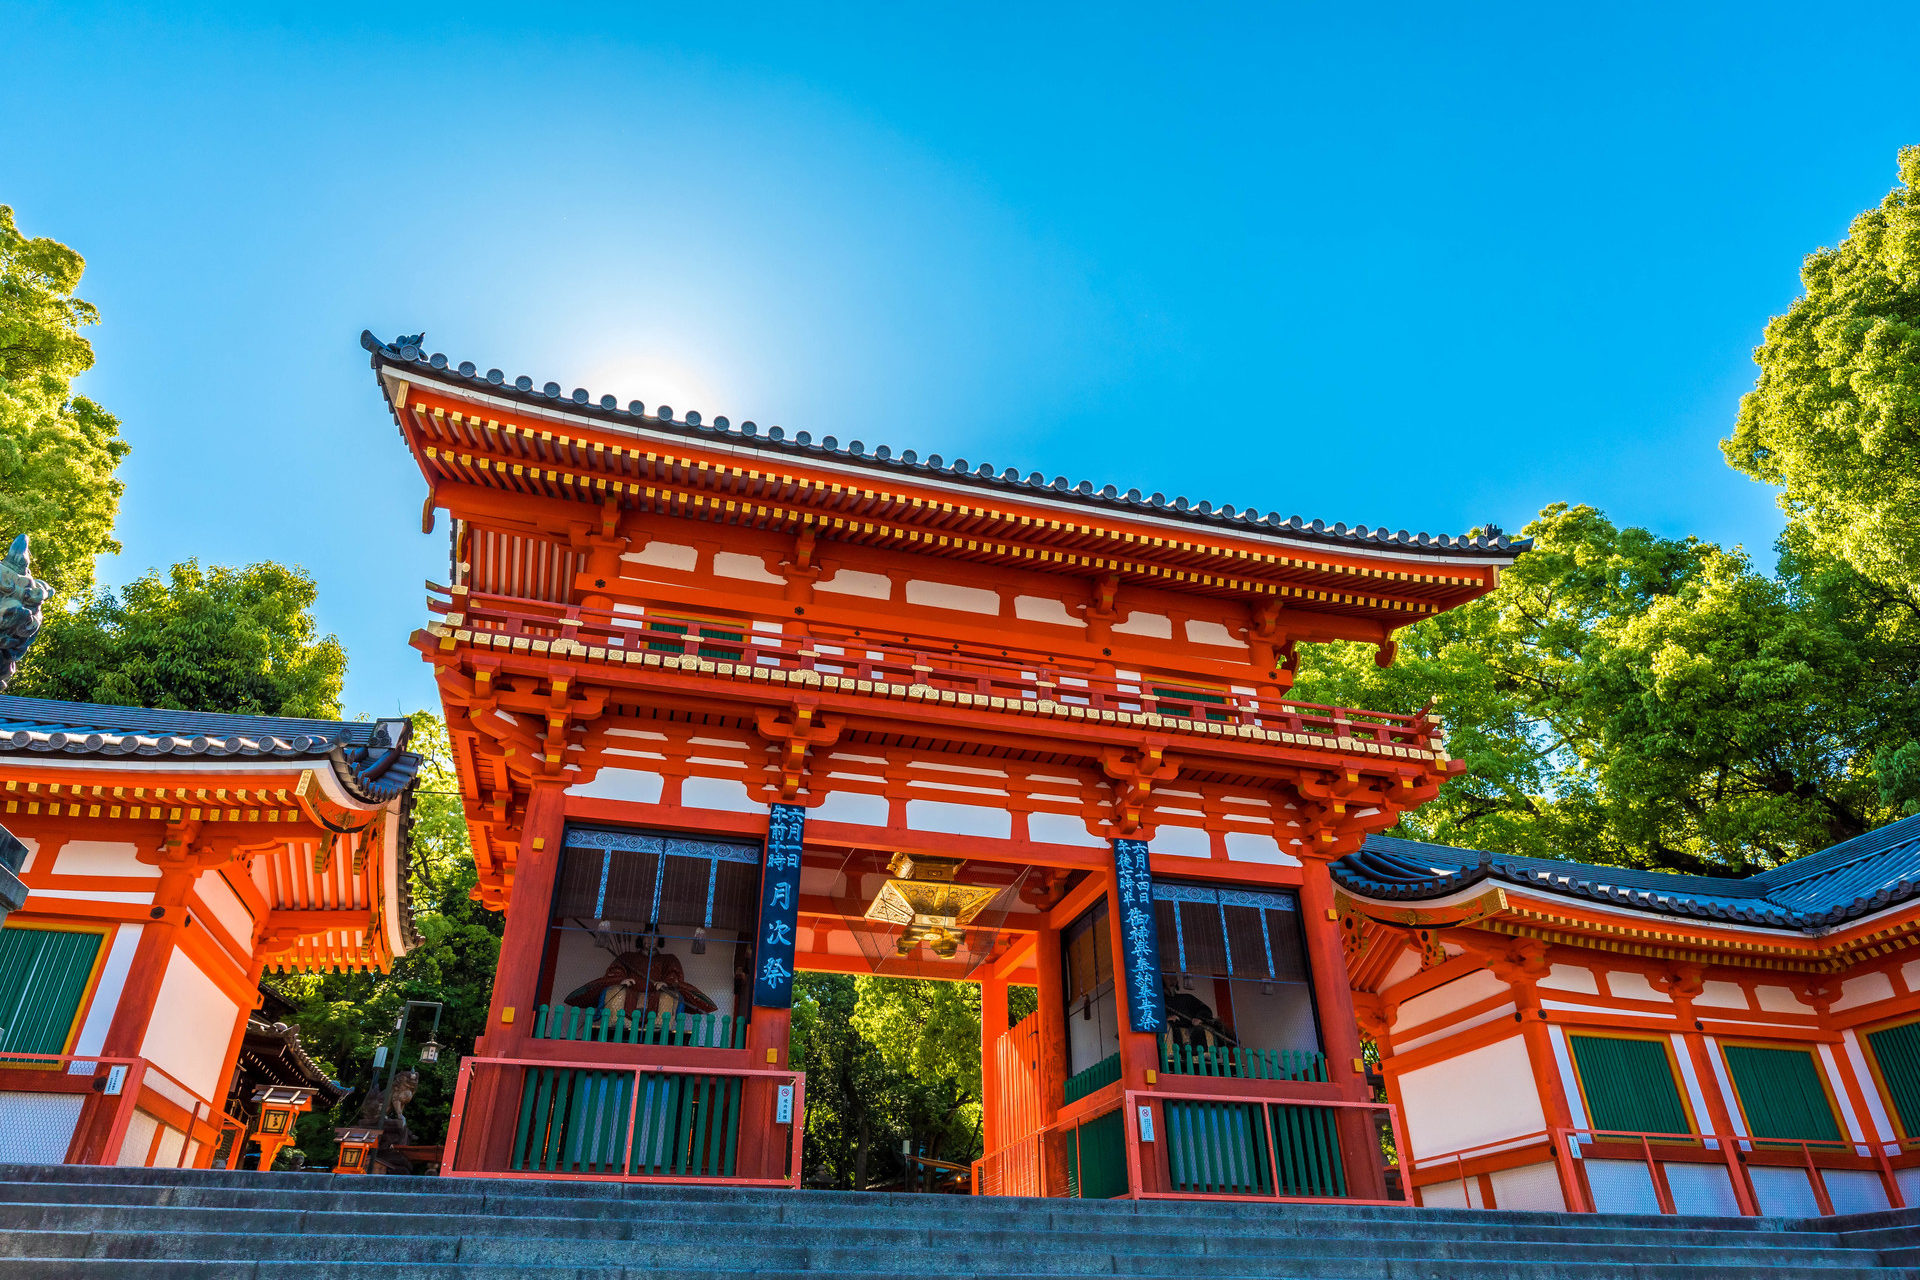 様々なパワーが集まる八坂神社とは Caedekyoto カエデ京都 紅葉と伝統美を引き継ぐバッグ